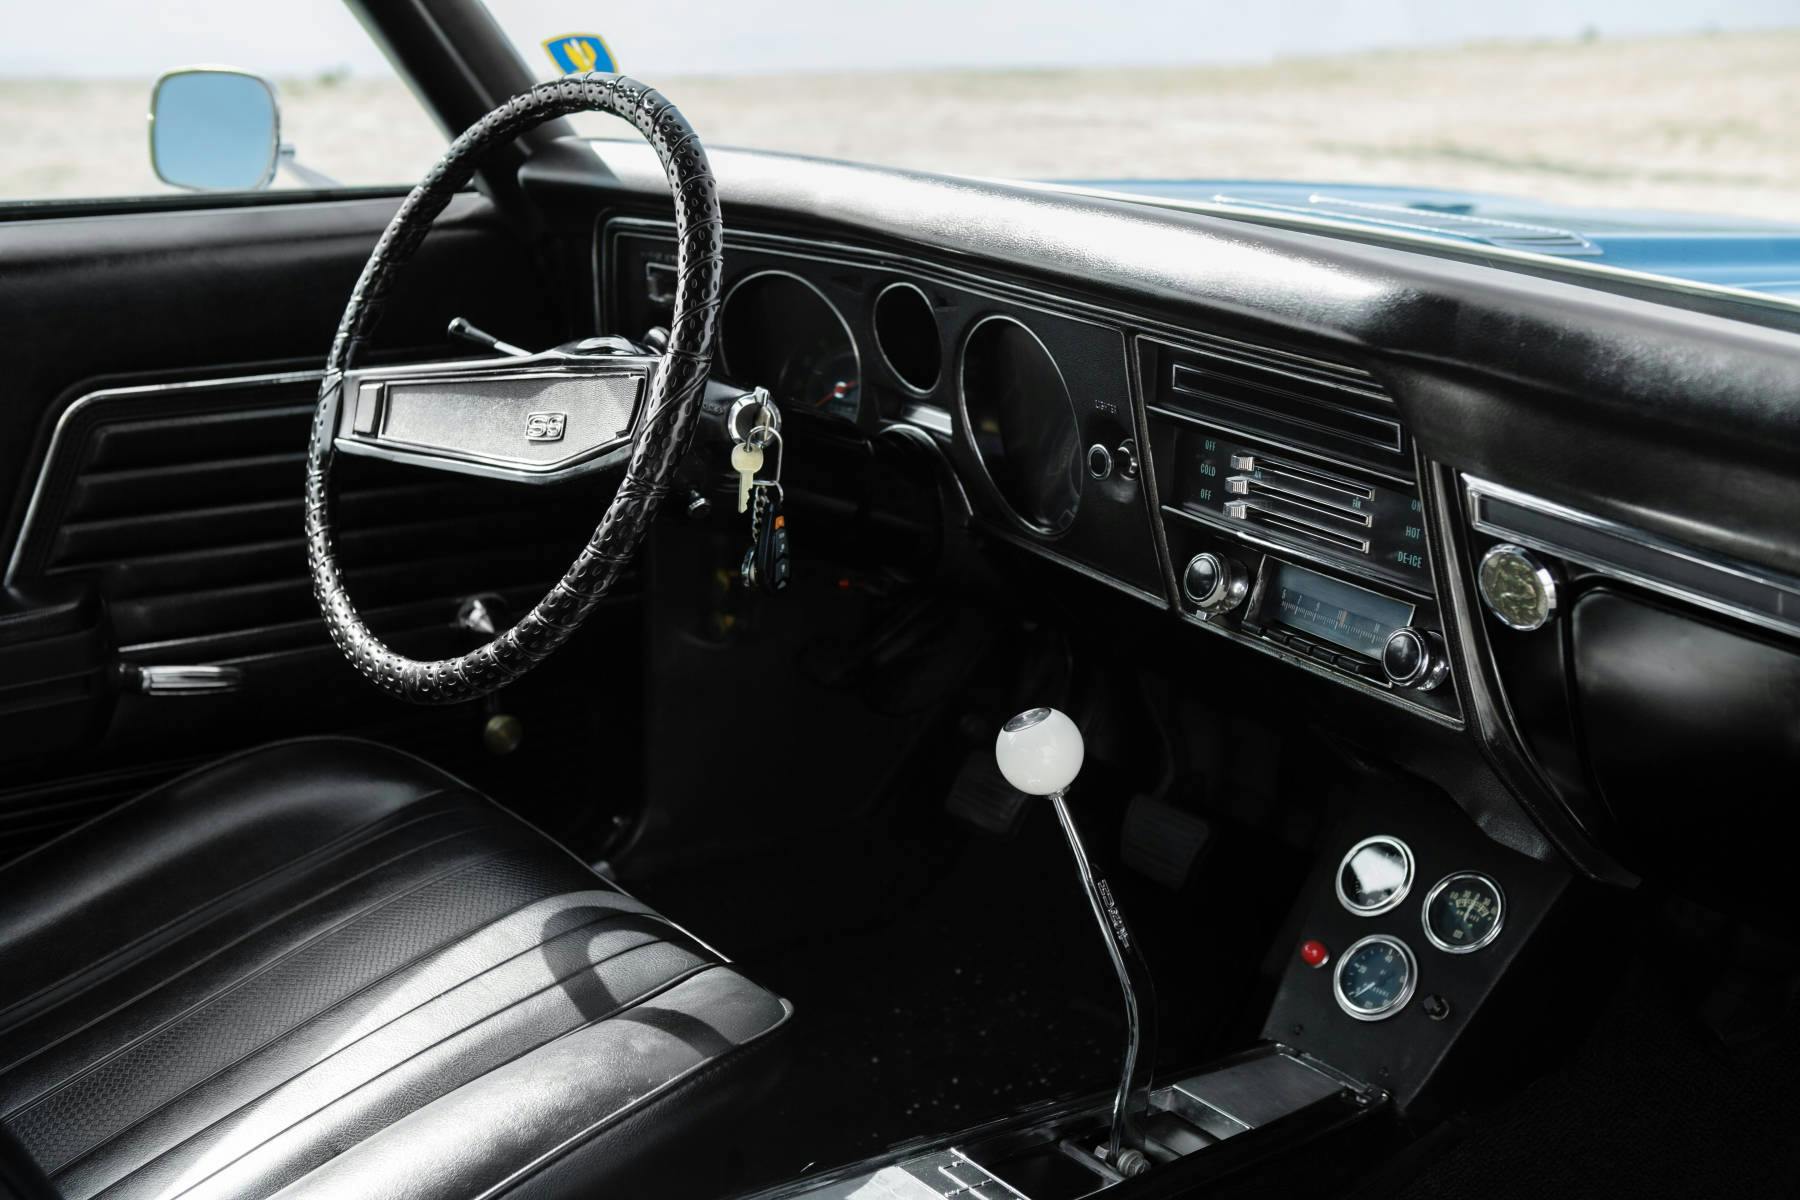 1969 Chevrolet Chevelle Malibu SS 396 interior dash angle